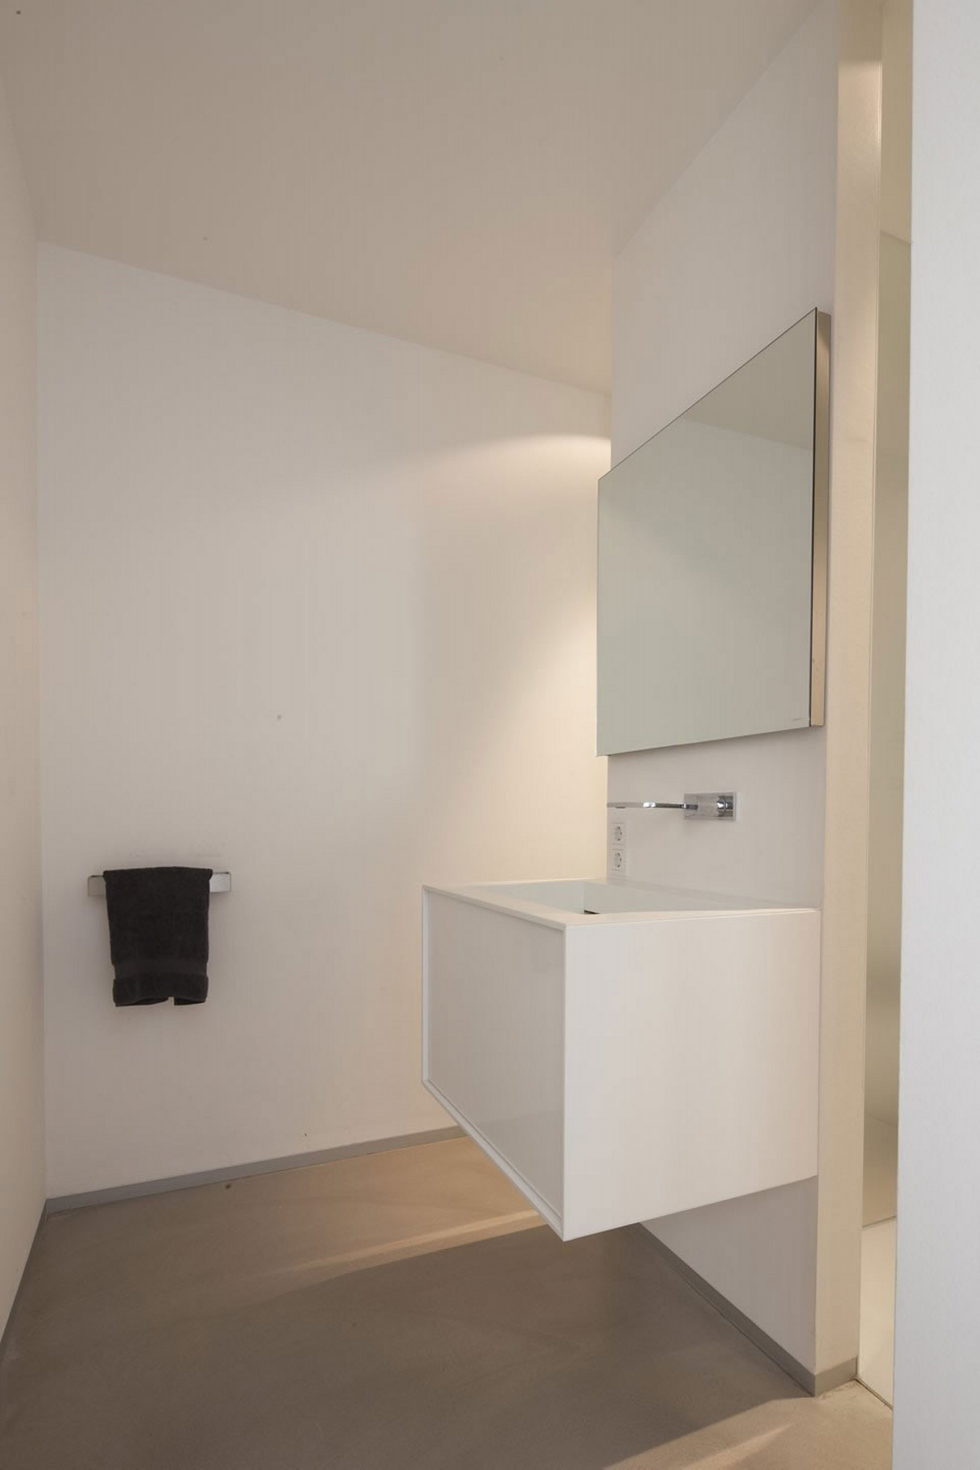 Spee Haelen Minimalism-Style Villa From Lab32 architecten Studio 26